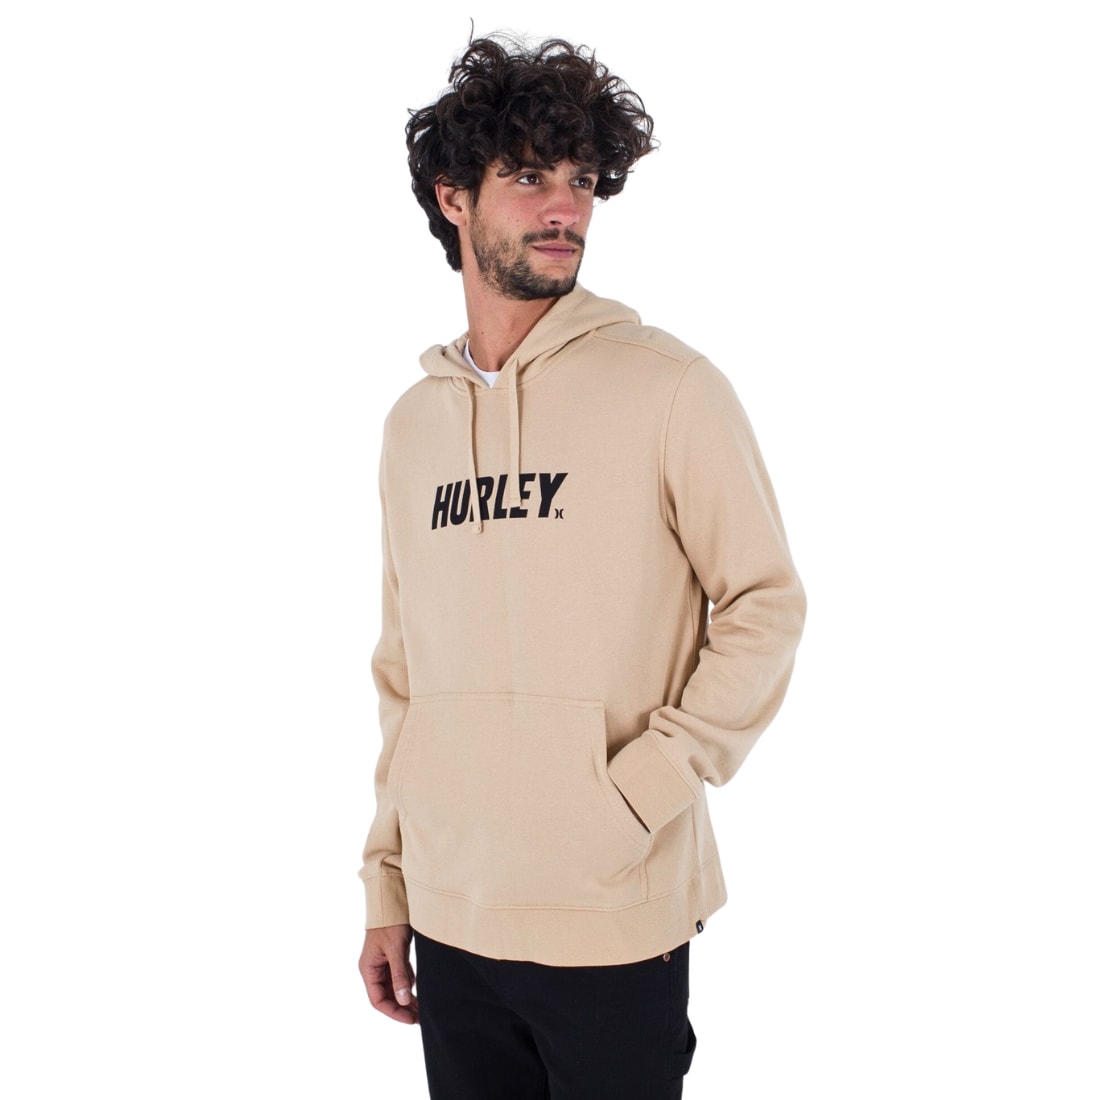 Hurley Fastlane Solid Pullover Fleece Hoodie - Vanilla Bean - Mens Pullover Hoodie by Hurley